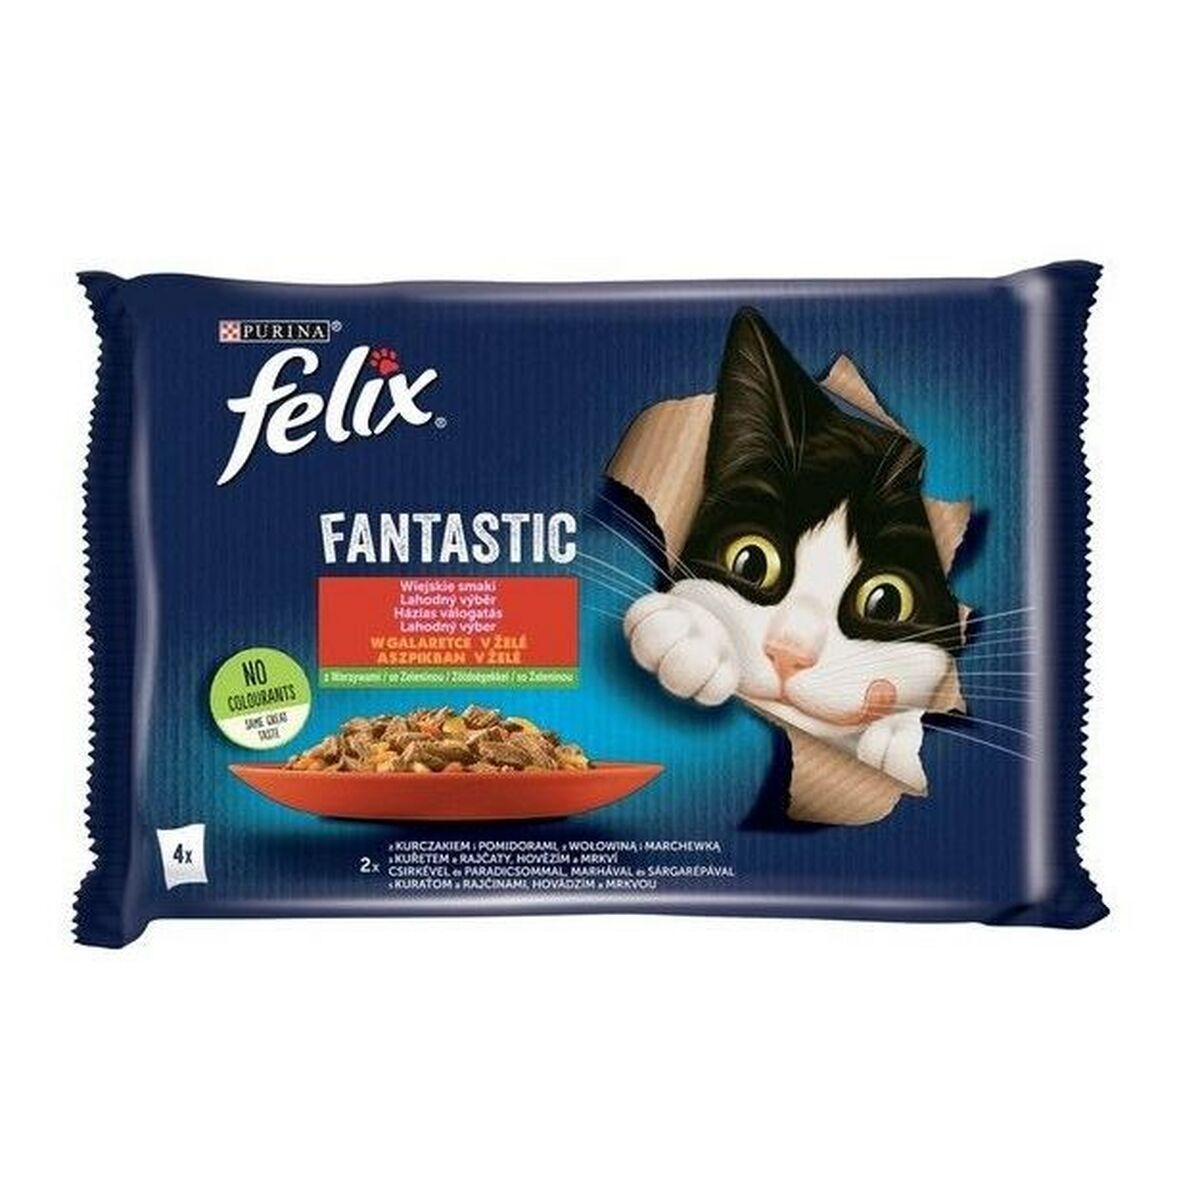 Aliments pour chat Purina Felix Fantastic Poulet Veau Carotte Tomate